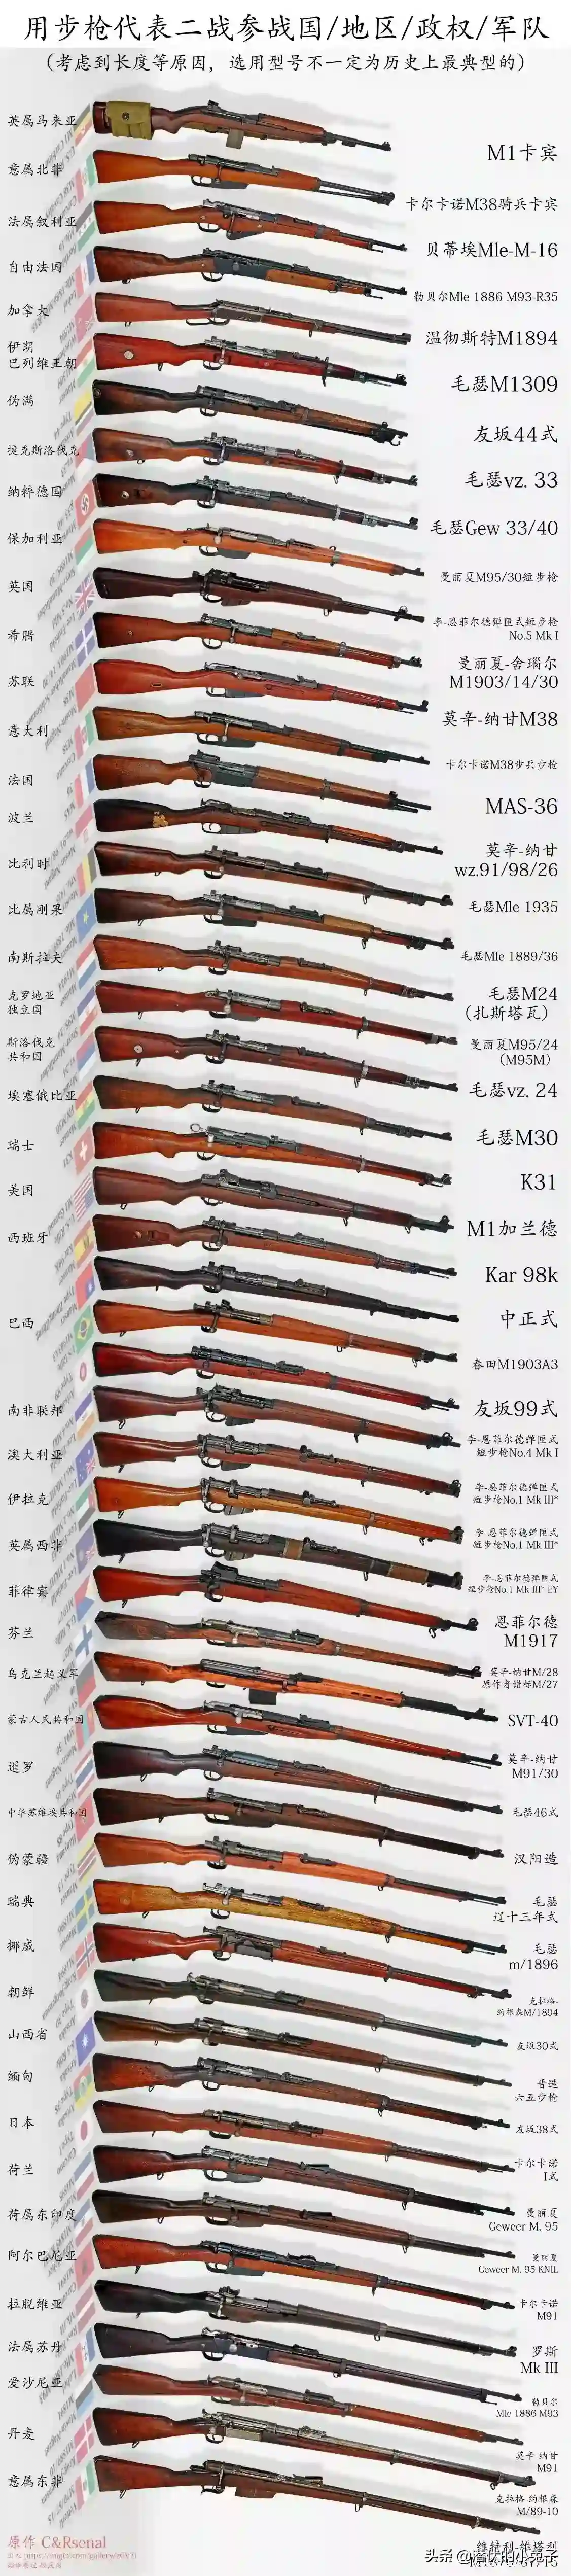 二战步枪列表